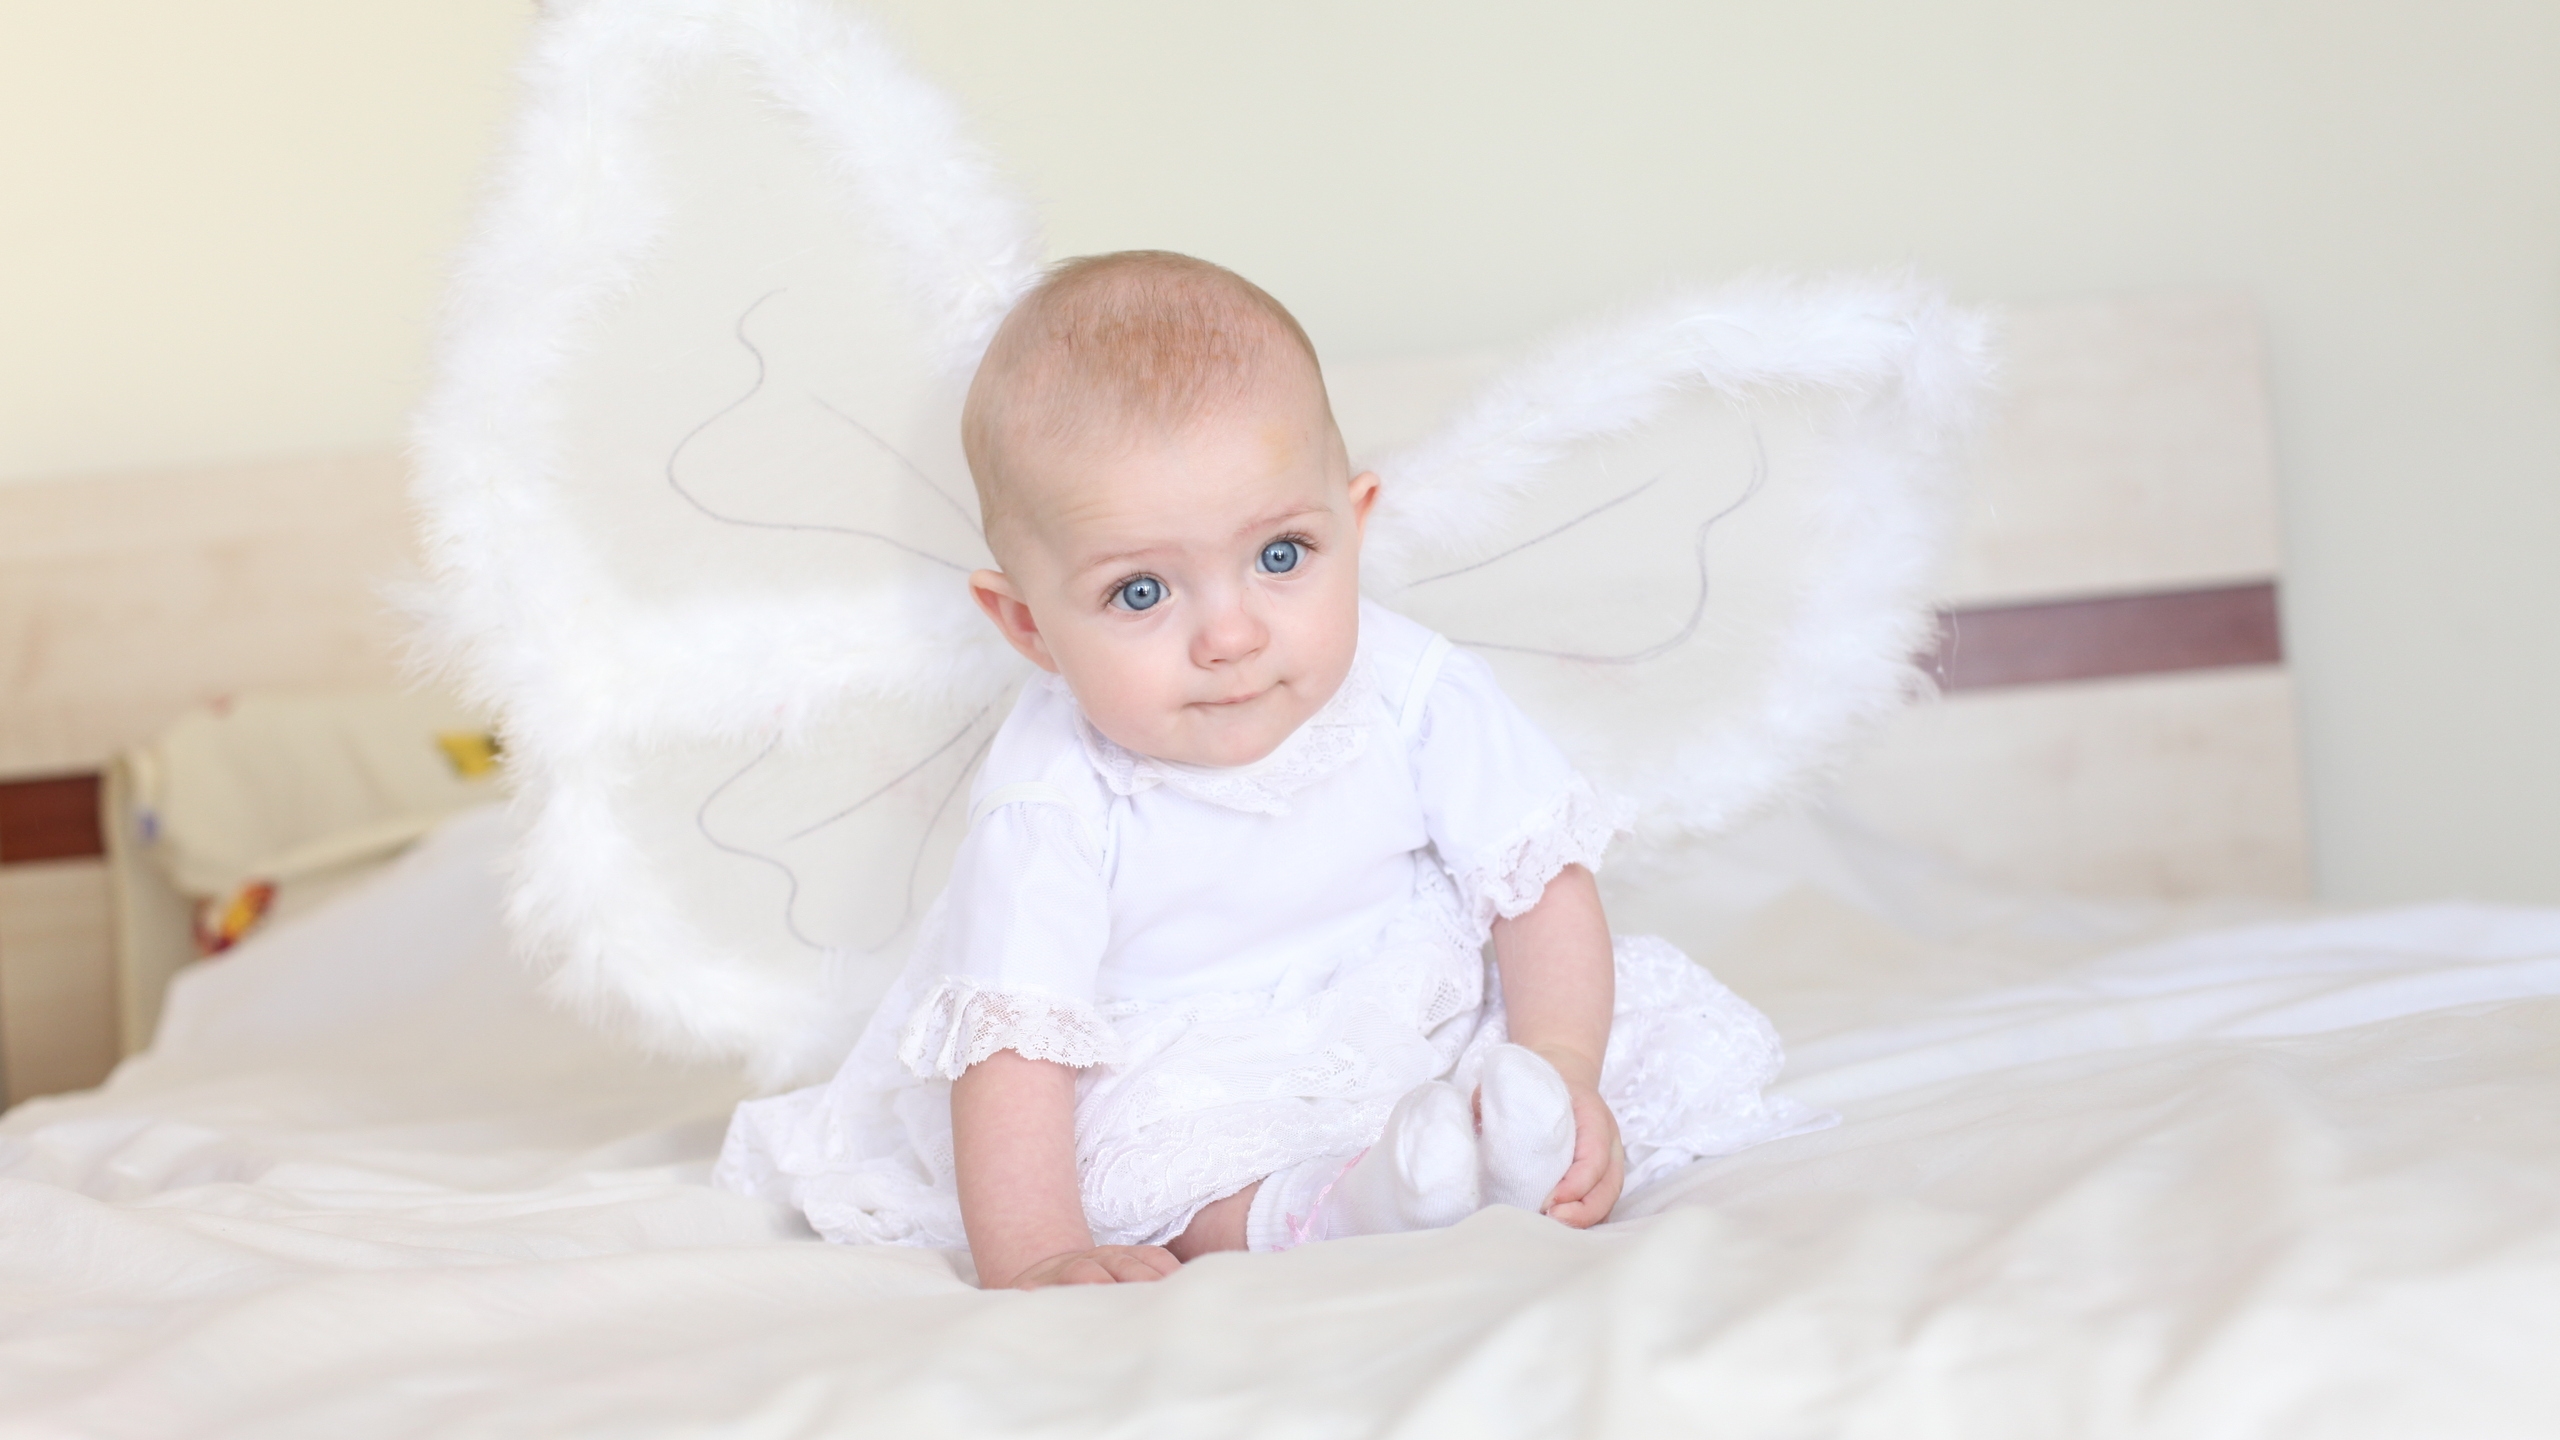 Little Angel for 2560x1440 HDTV resolution